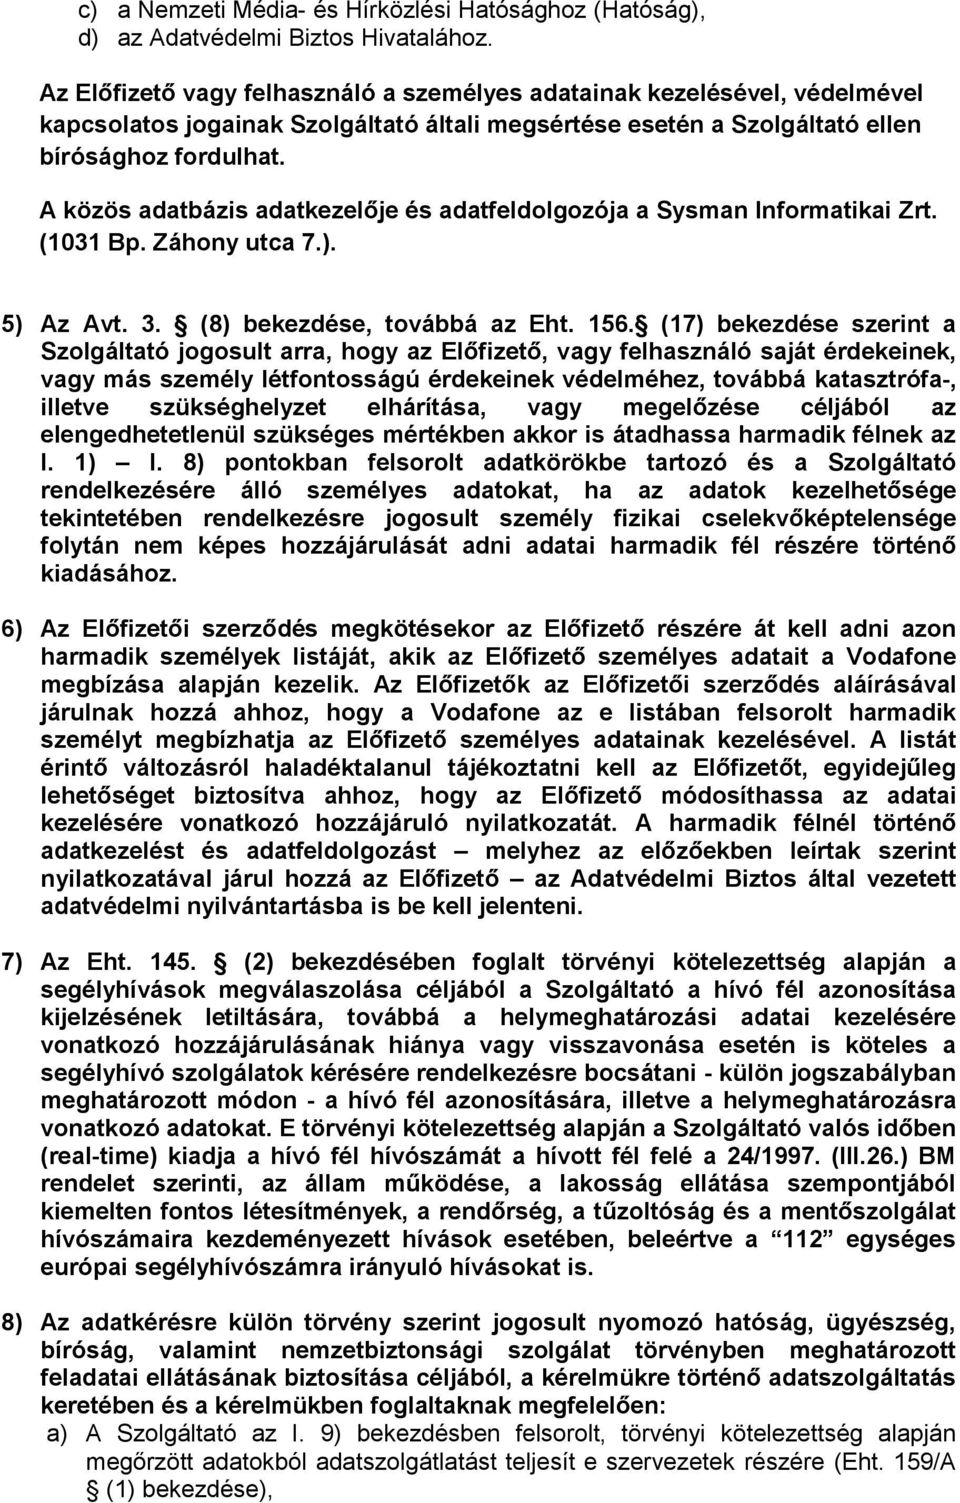 A közös adatbázis adatkezelője és adatfeldolgozója a Sysman Informatikai Zrt. (1031 Bp. Záhony utca 7.). 5) Az Avt. 3. (8) bekezdése, továbbá az Eht. 156.